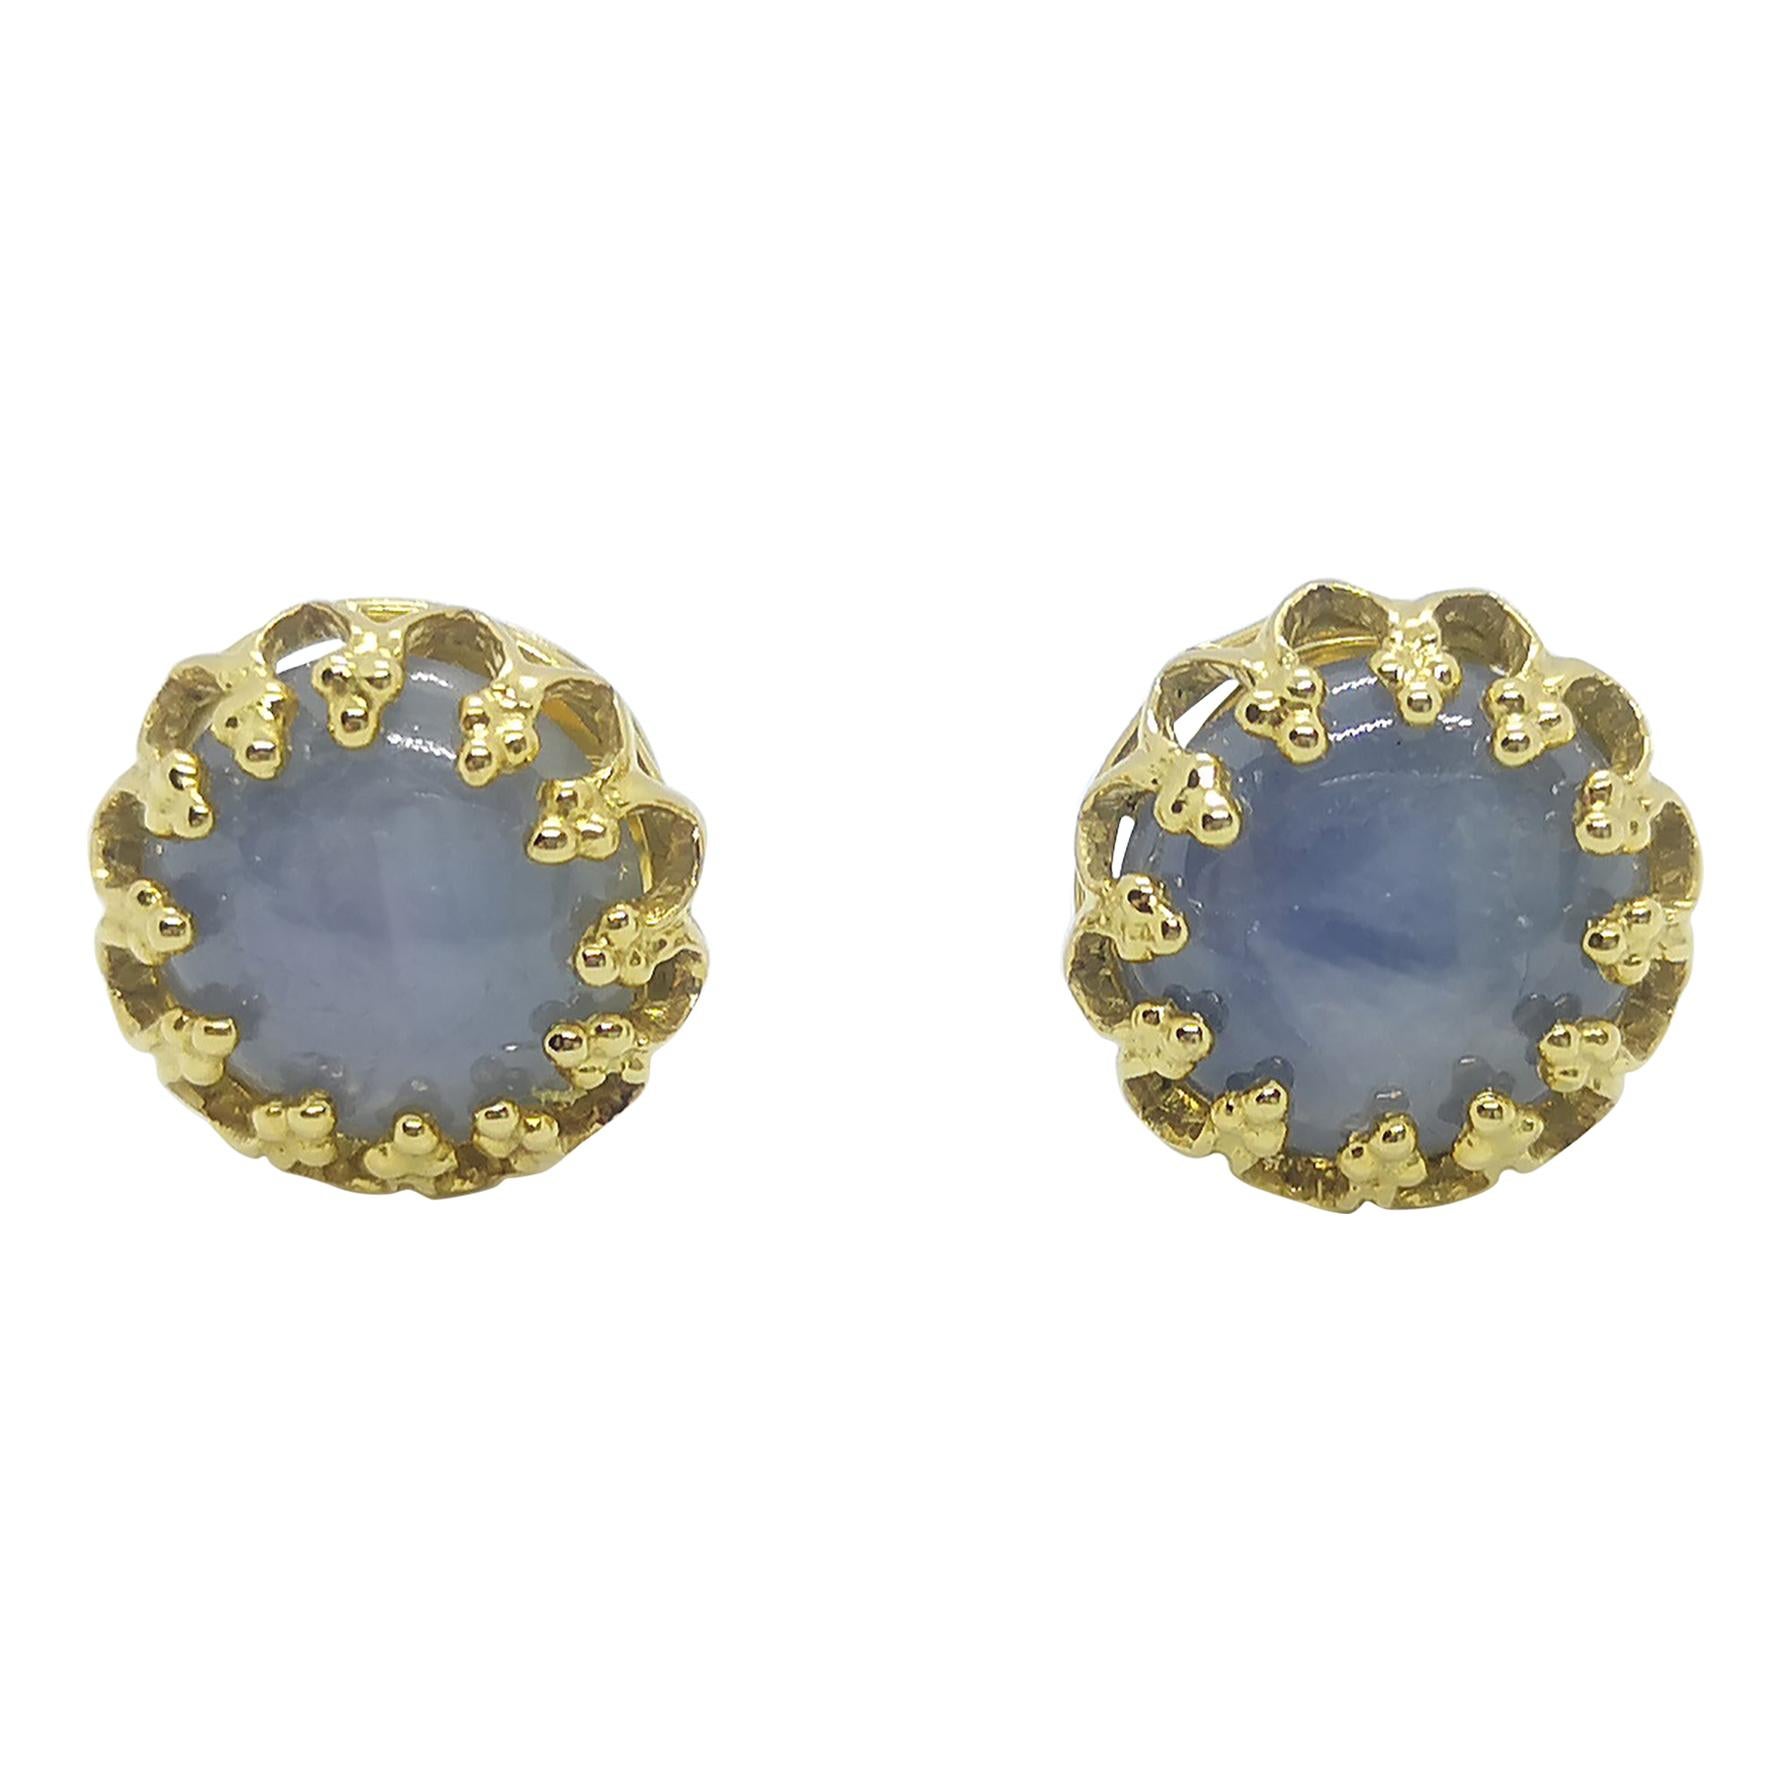 Blue Star Sapphire Earrings Set in 18 Karat Gold Settings